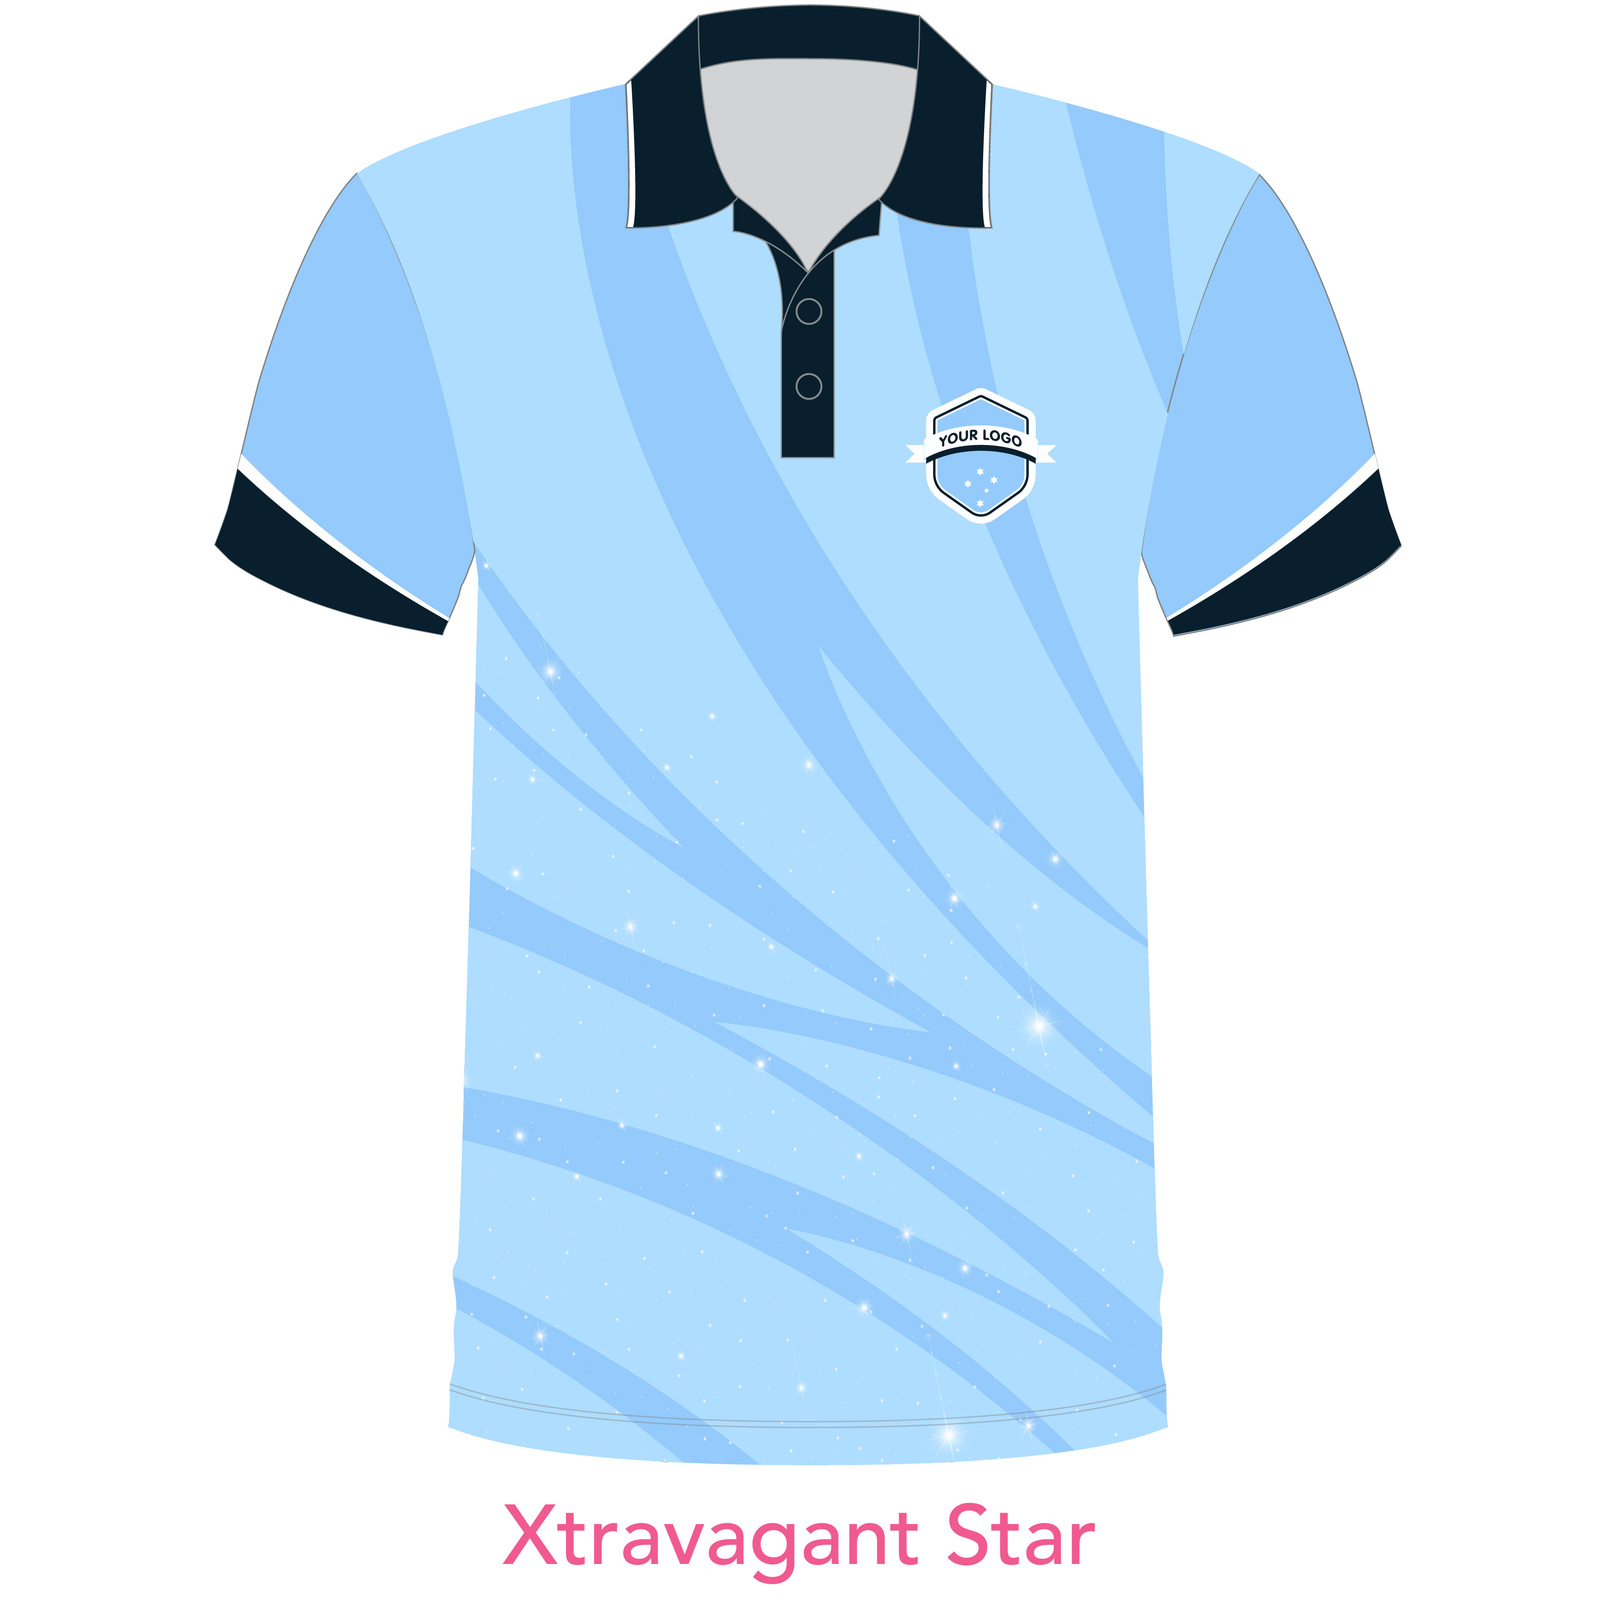 Customised Shirt - Xtravagant Star